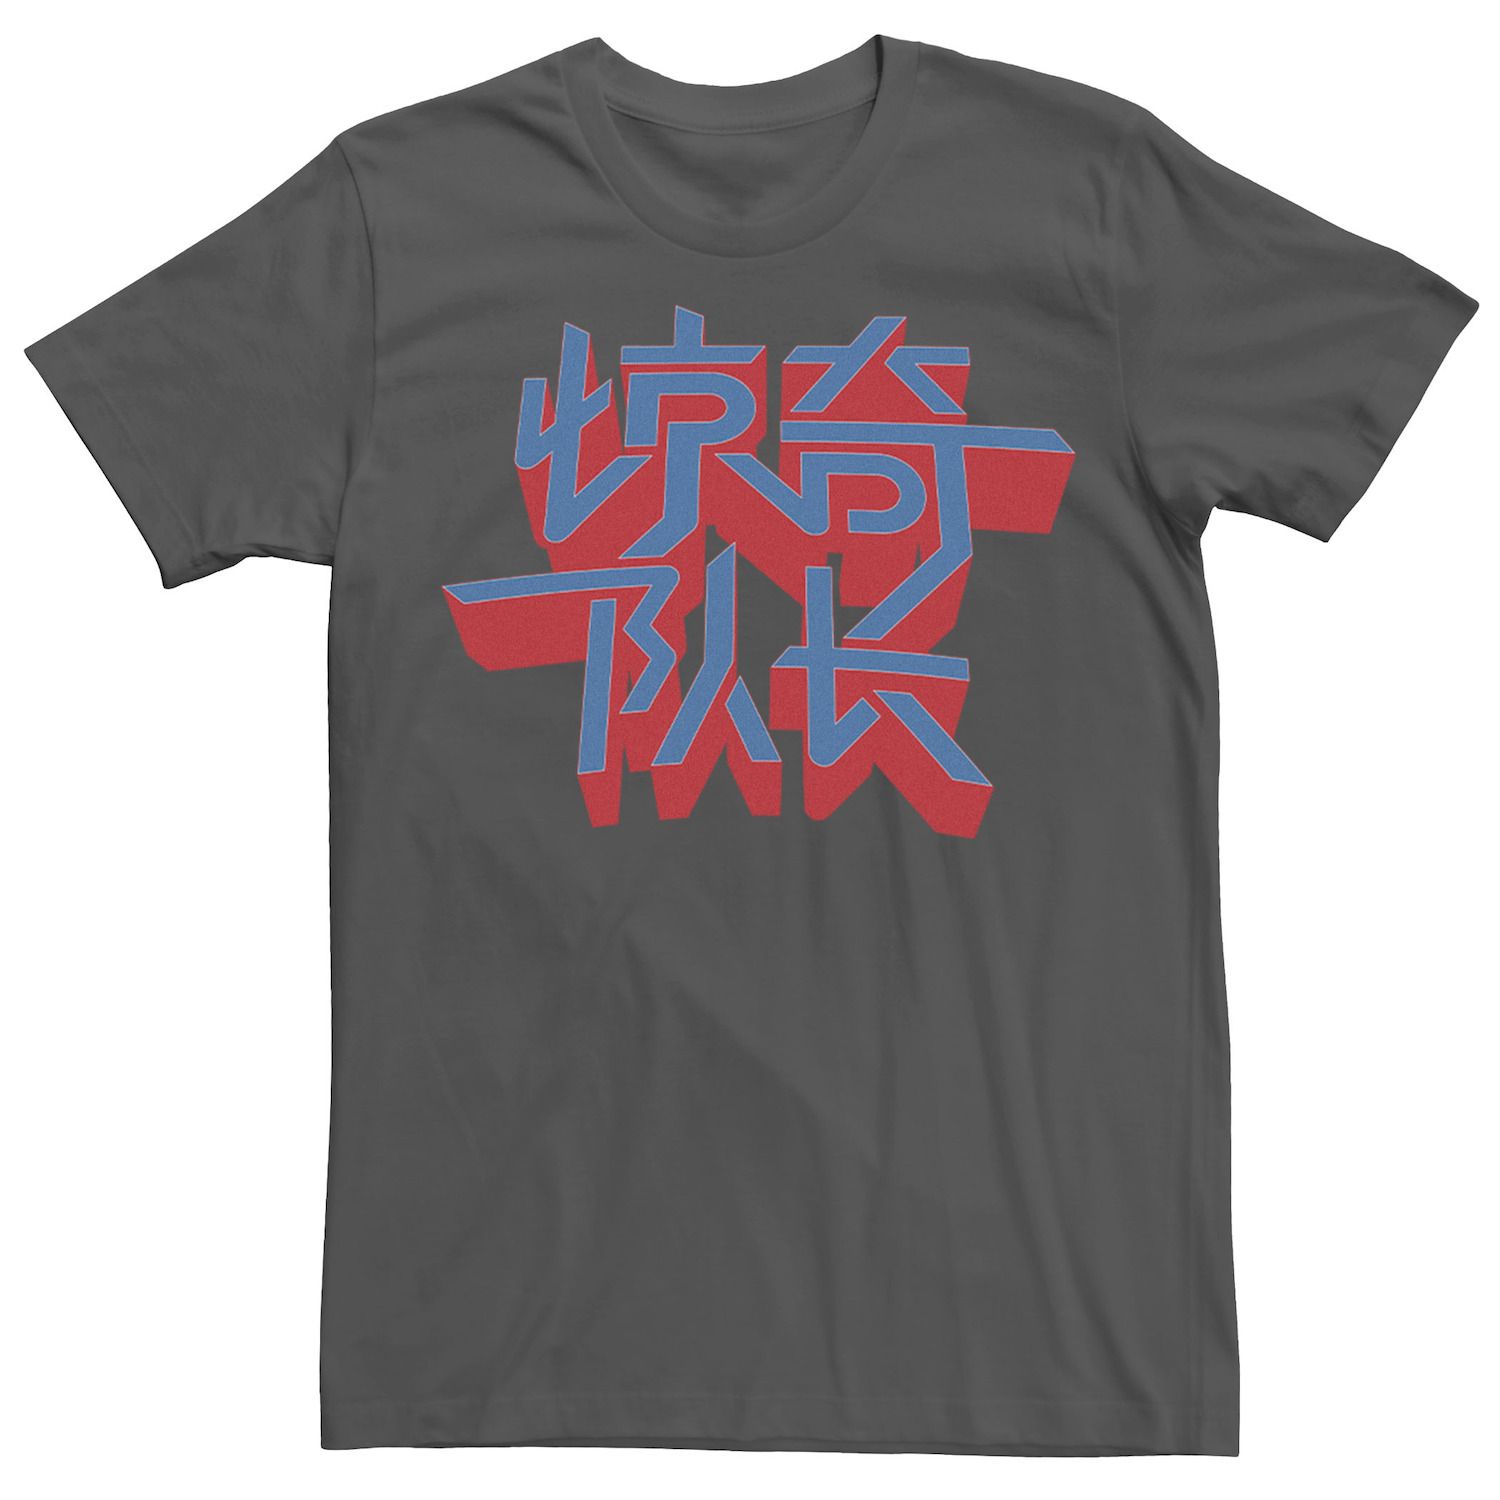 Мужская футболка с графическим логотипом и текстовым логотипом Captain Hanzi Marvel мужская футболка с рваным винтажным круглым логотипом marvel captain marvel и графическим рисунком